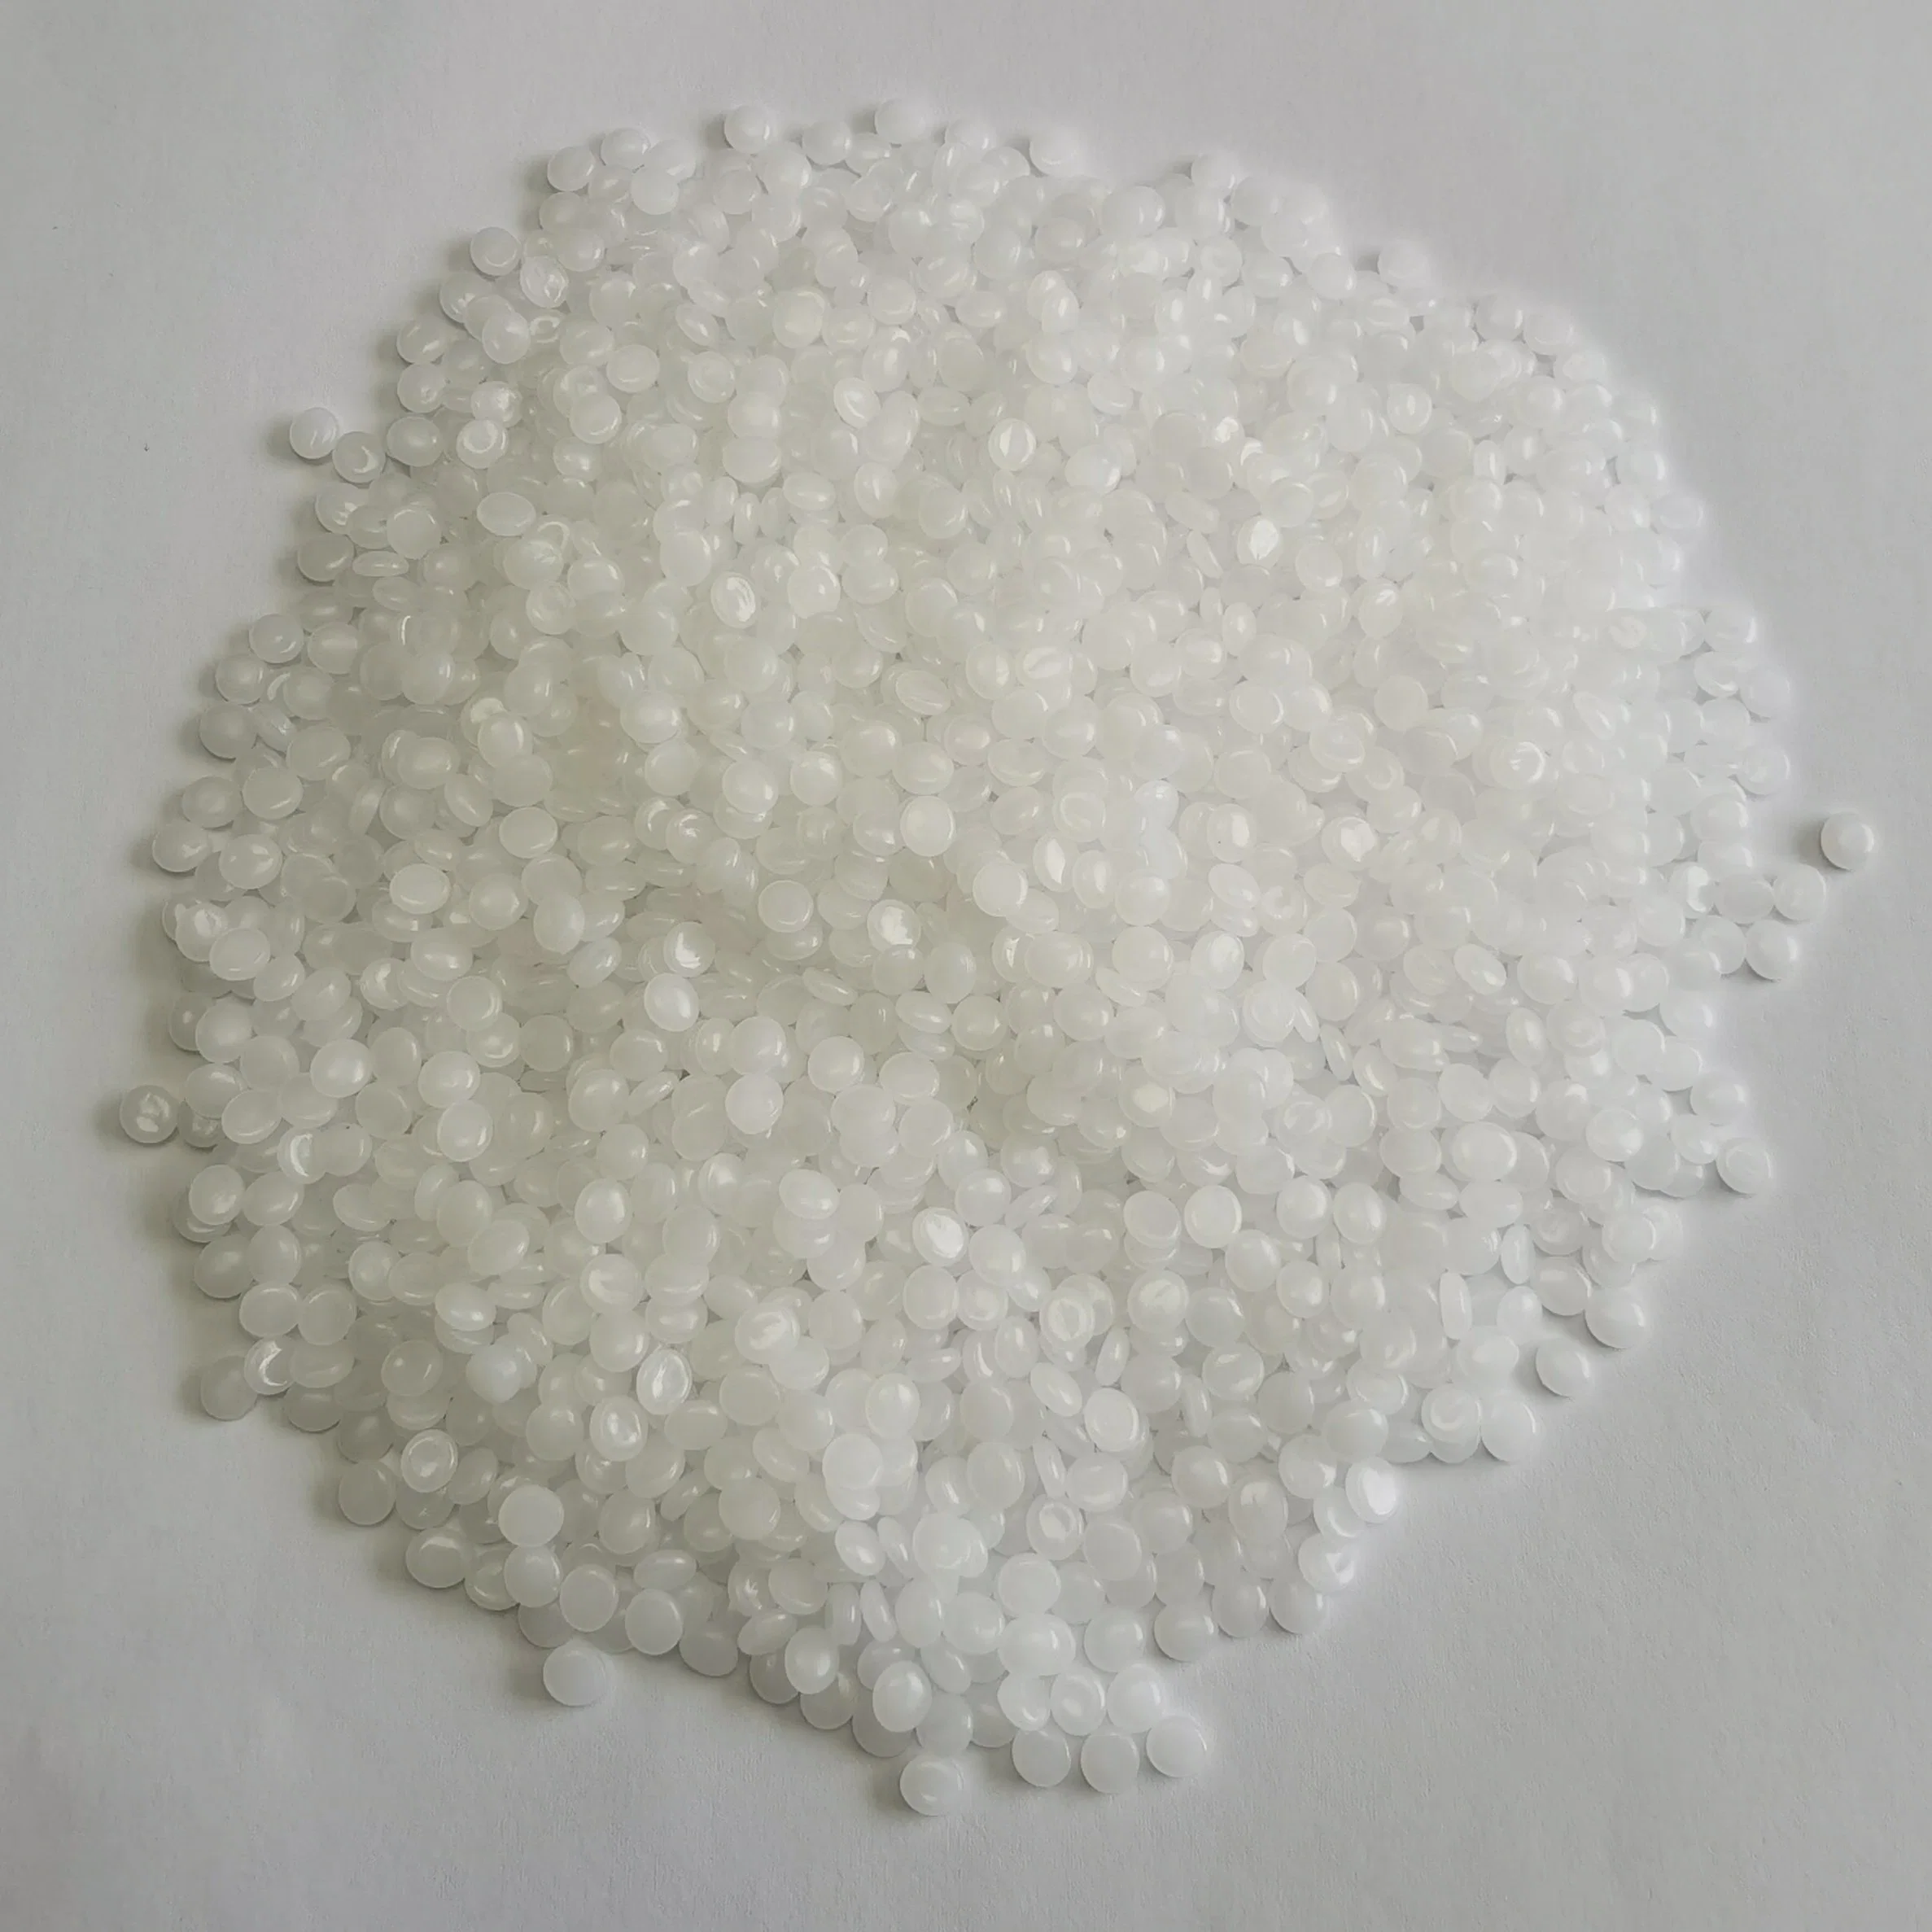 Пластиковый сырья белый Virgin гранулы Homopolymer PP полипропилен